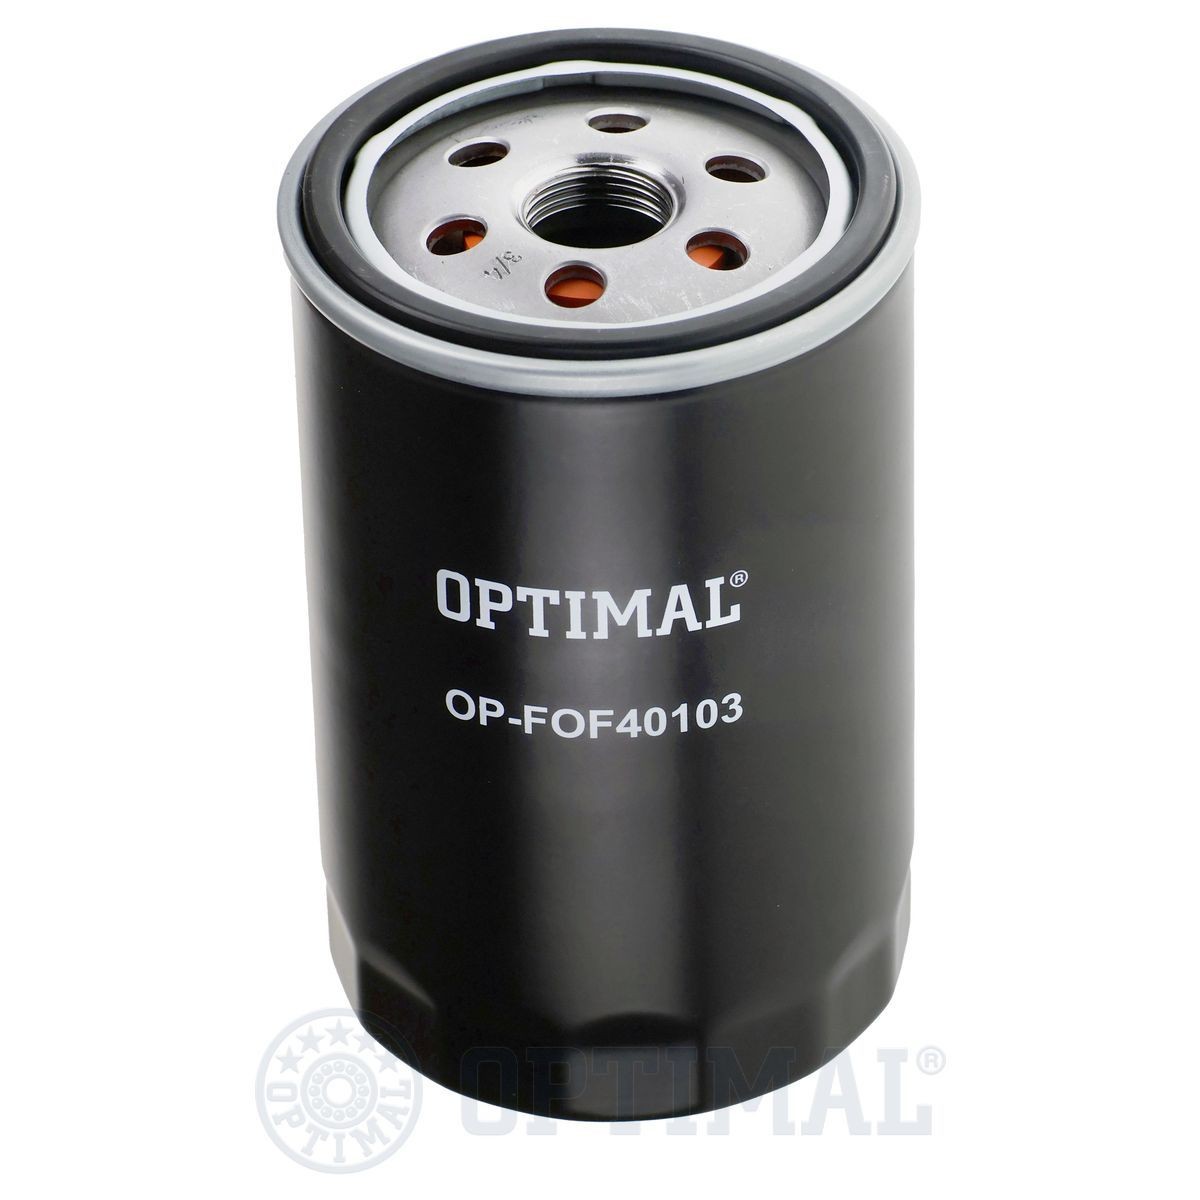 OPTIMAL OP-FOF40103 Oil filter YN 2 G 6714 B2A